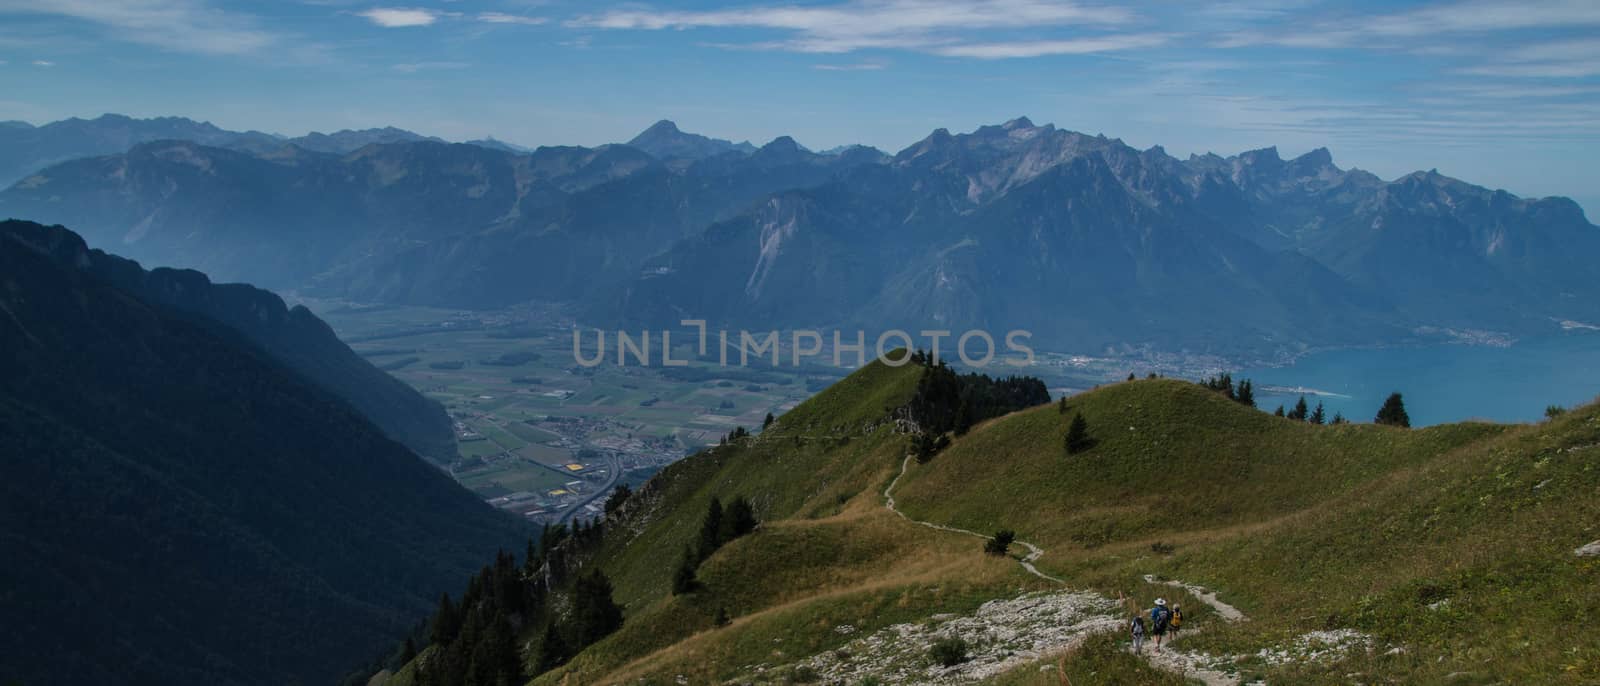 swiss alps landscape by bertrand